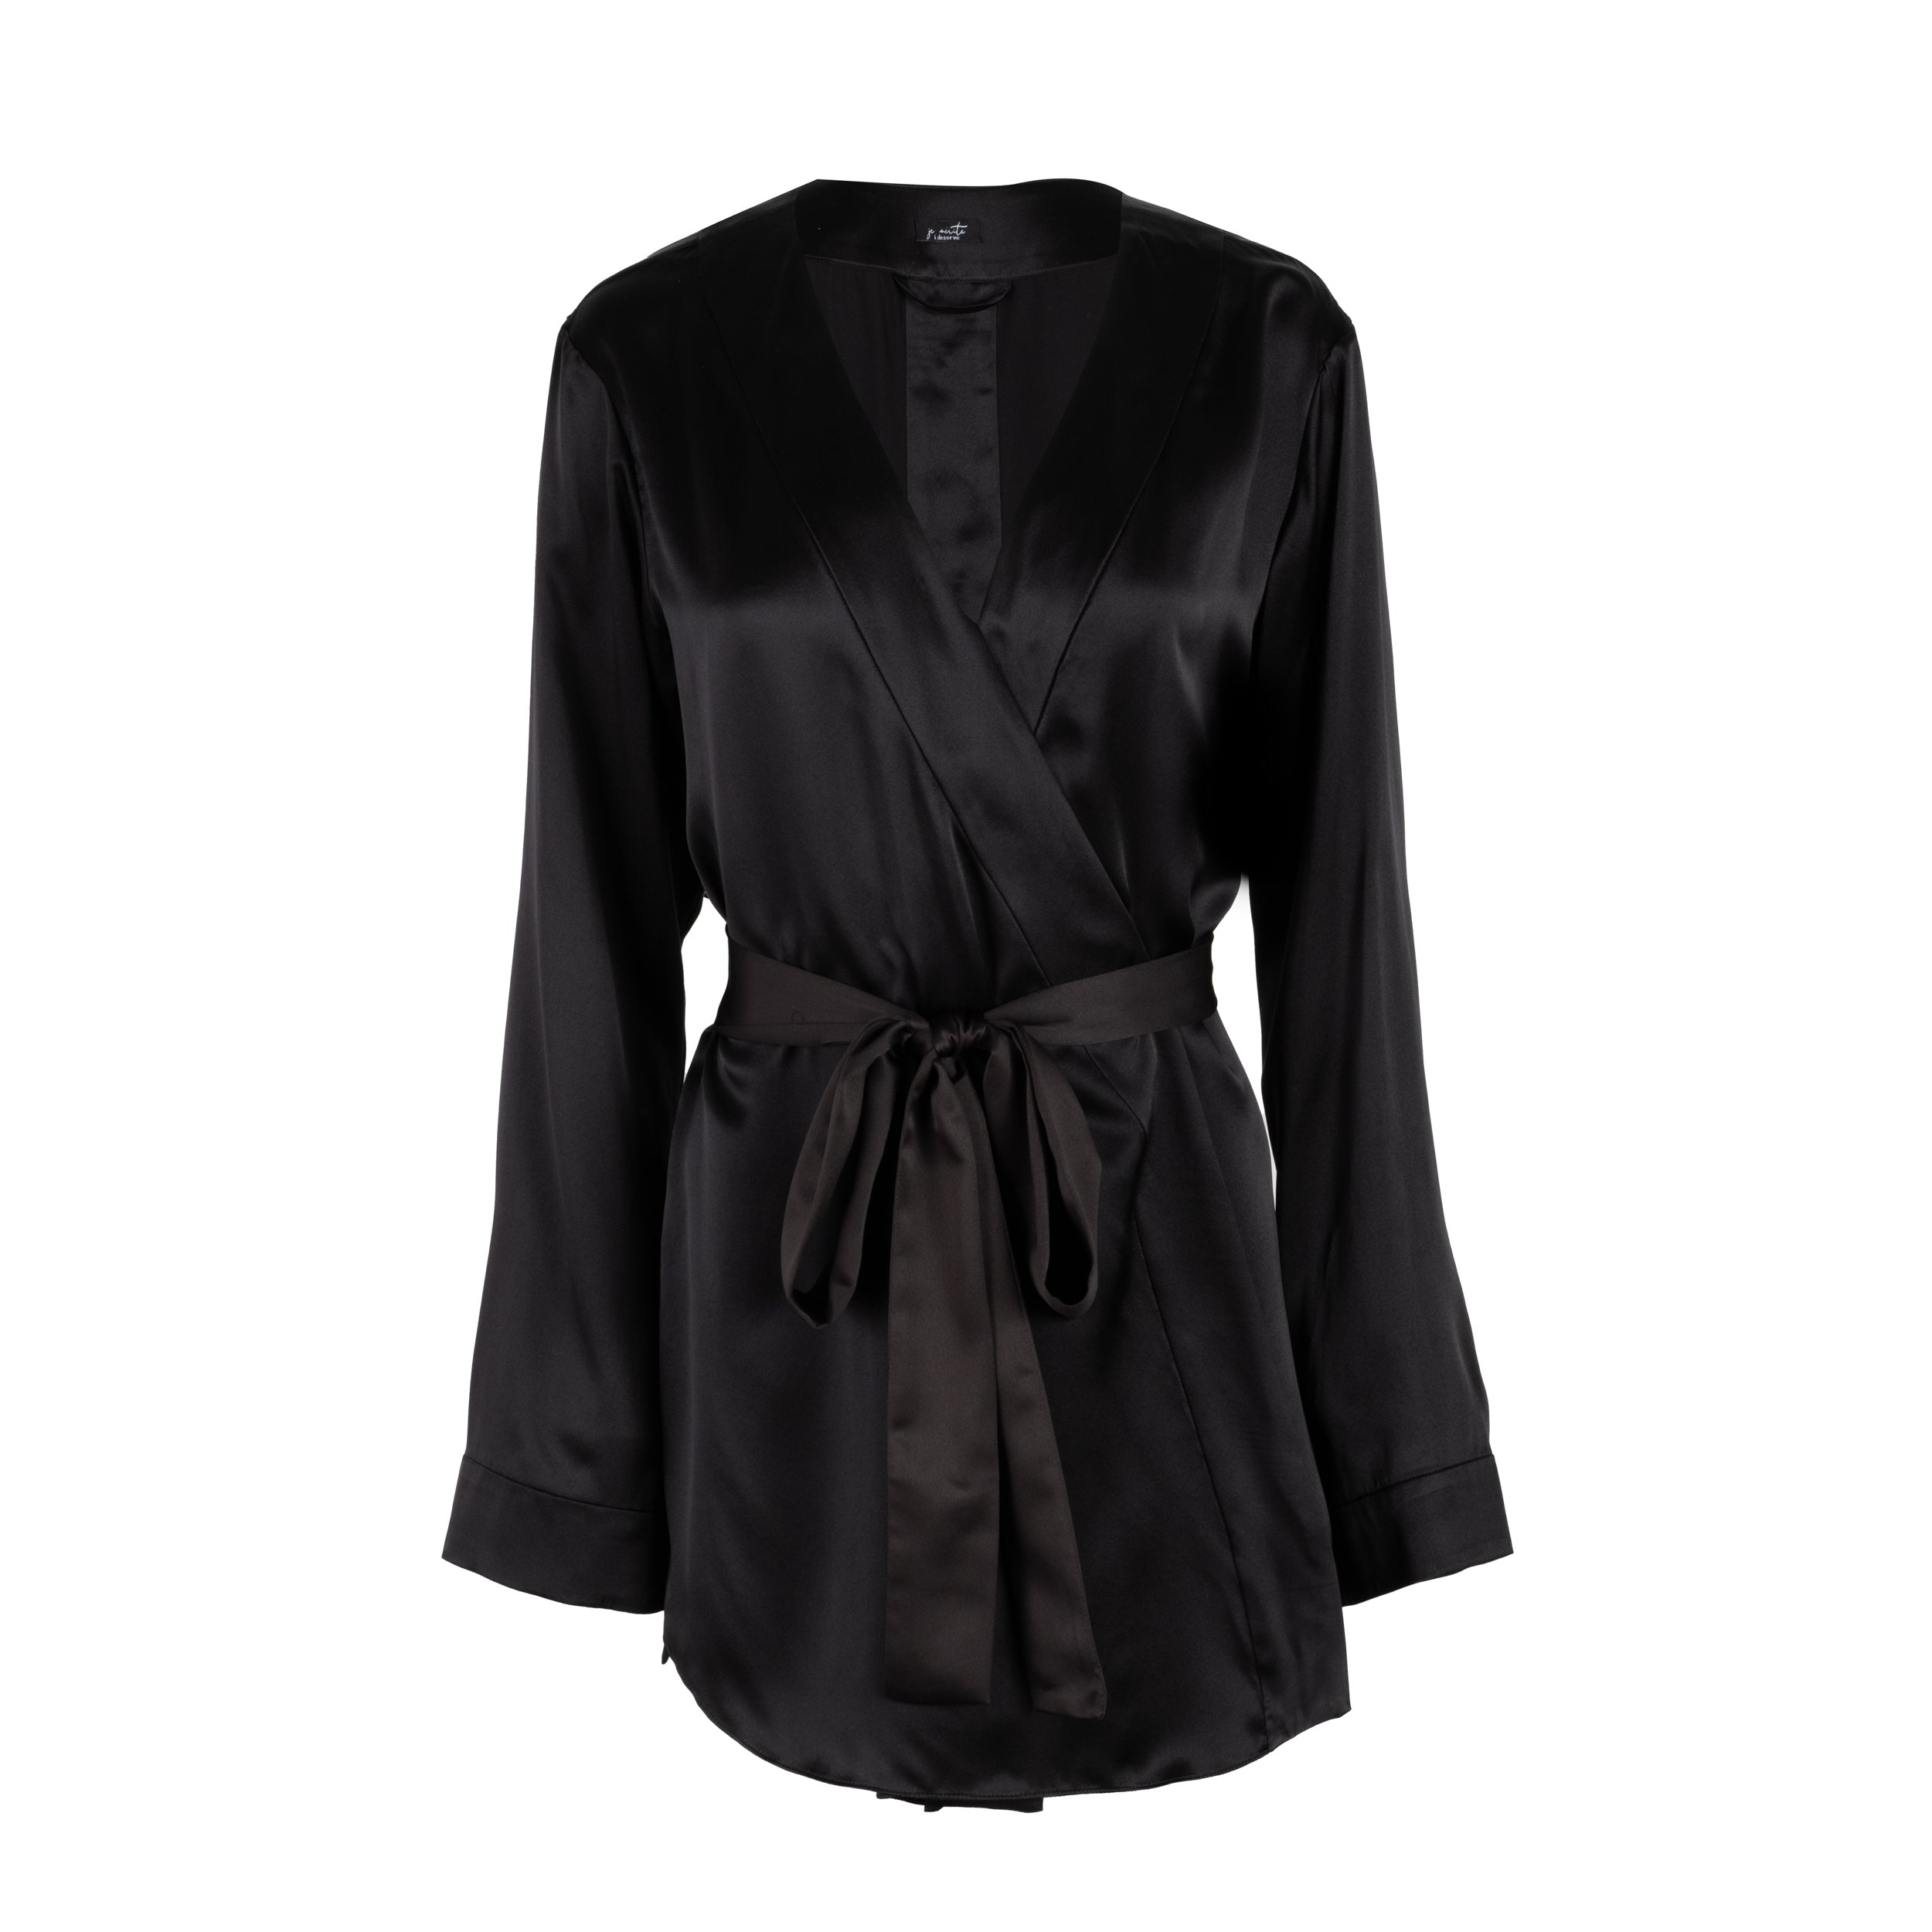 silk camisole in noire